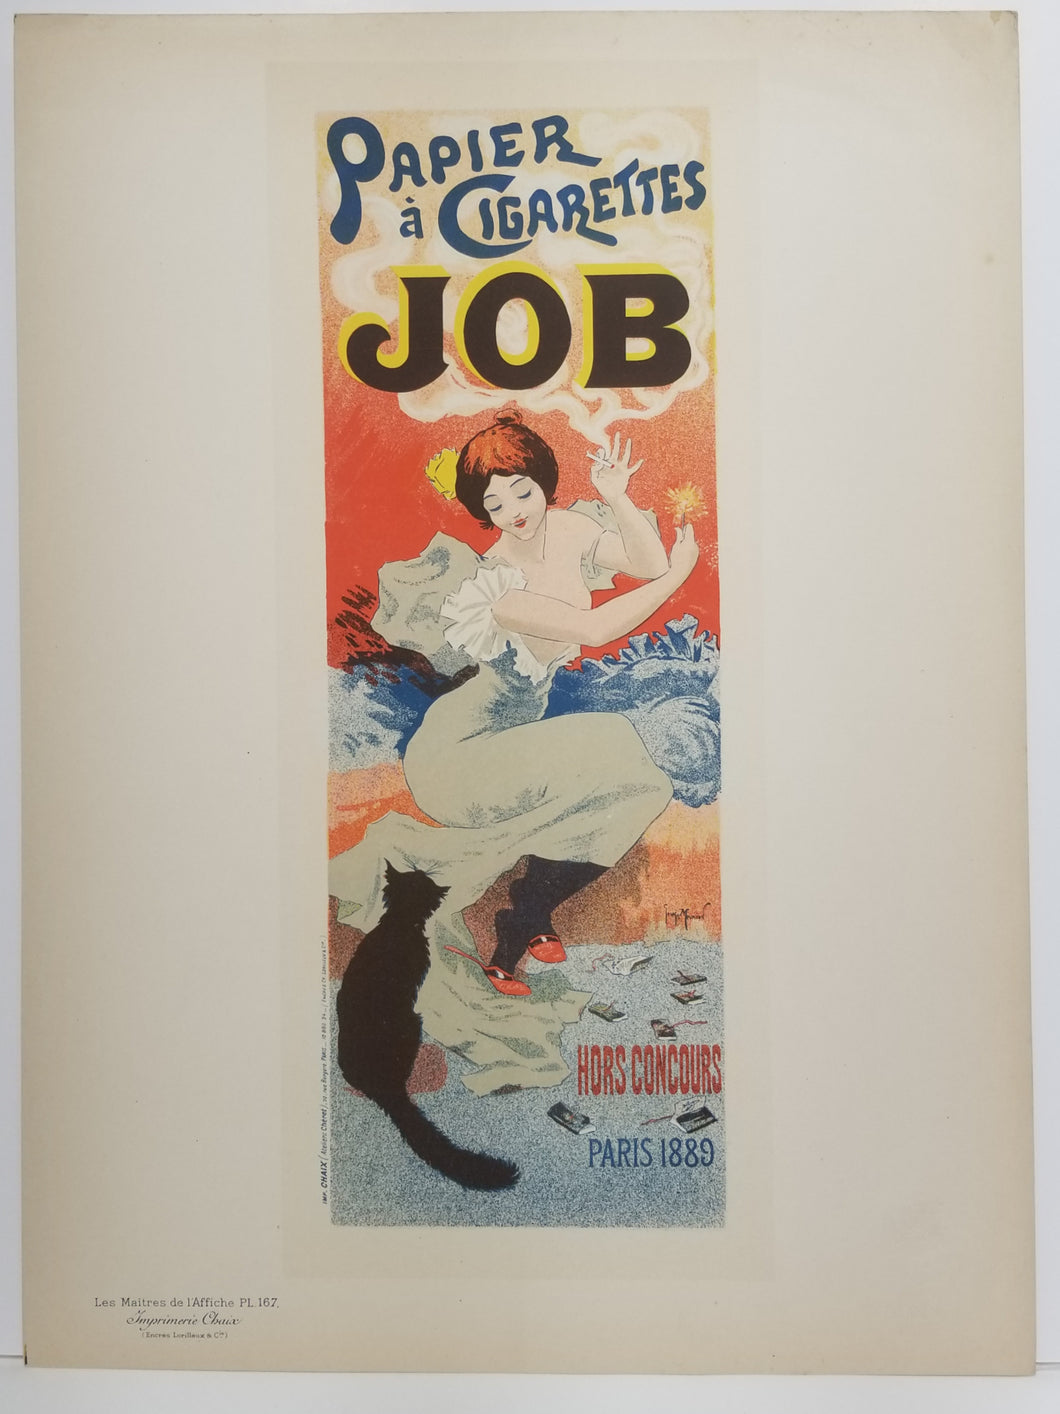 Papier à Cigarettes Job. 1894-1899.